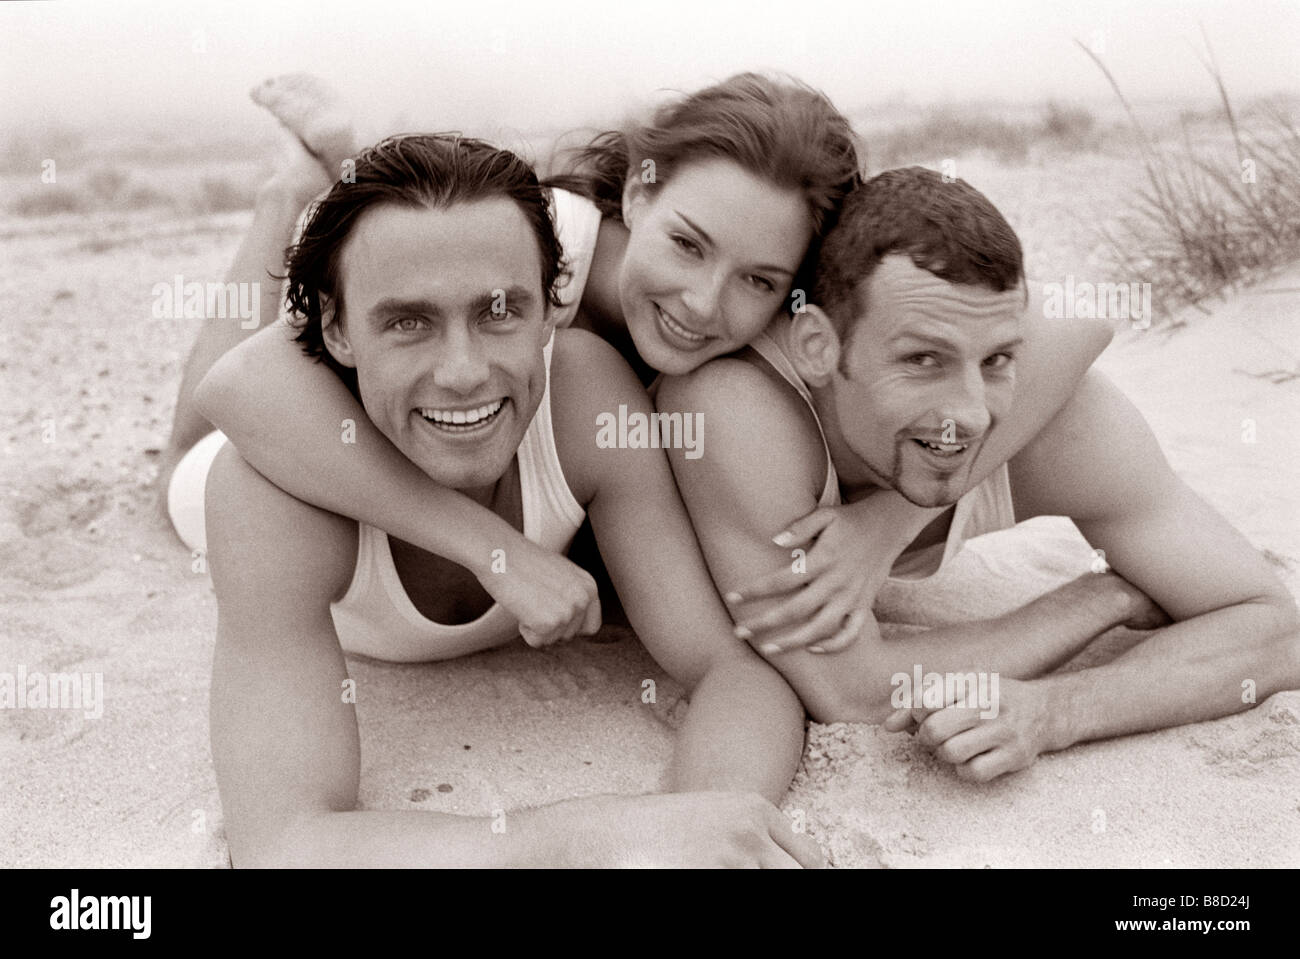 FV3046, Malek Chamoun; BW 3 Friends Embrace Beach Stock Photo